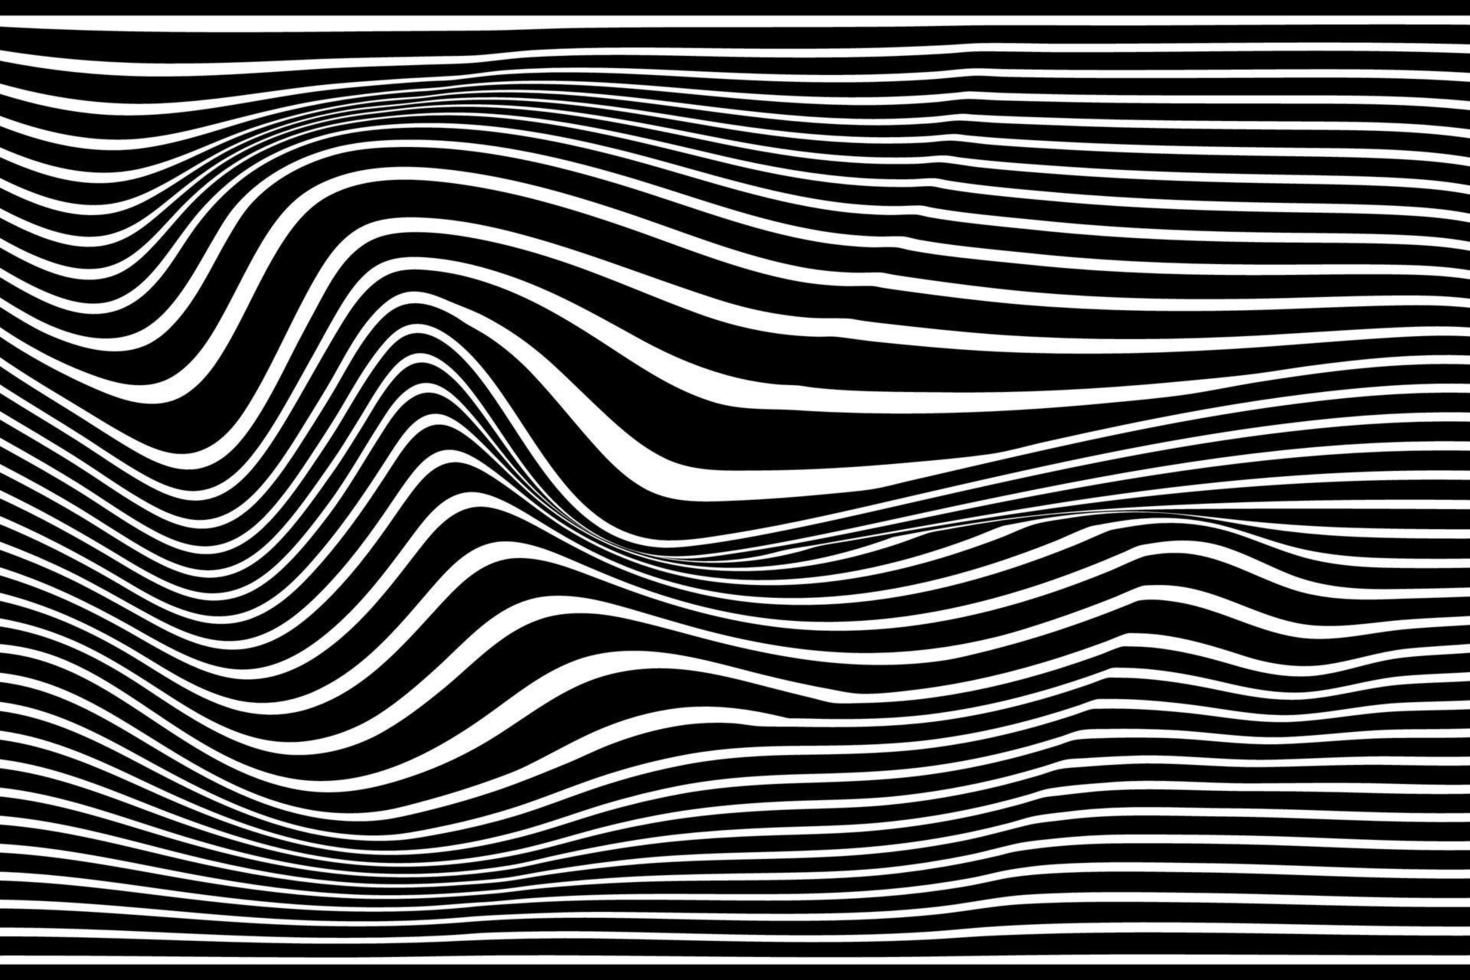 fondo de rayas de línea de onda abstracta en blanco y negro. Ilustración de vector de rayas onduladas de ilusión óptica de op art.